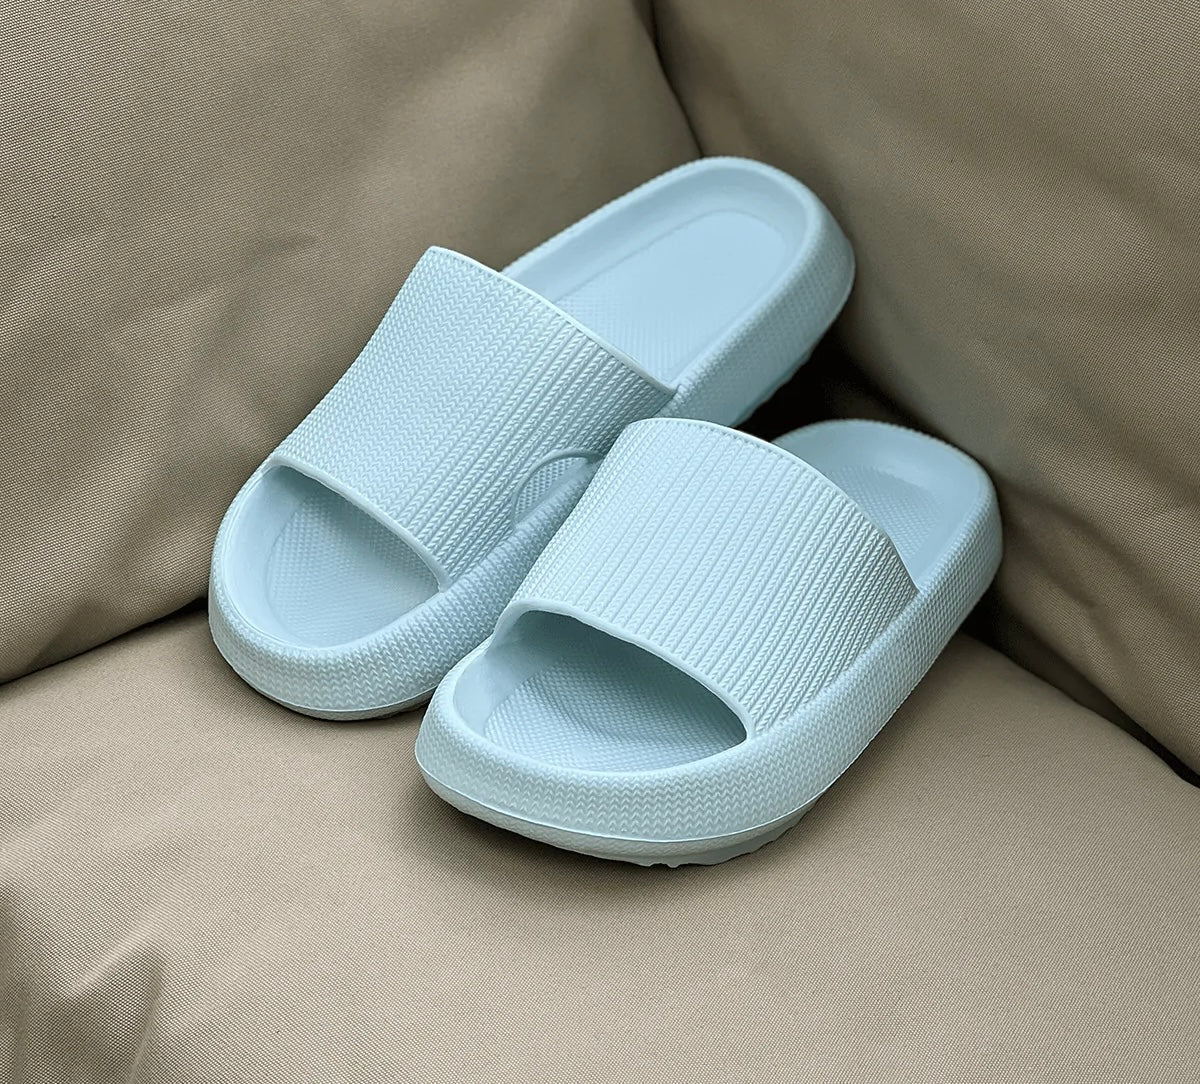 Sandalias cómodas con forma de nube para mujer